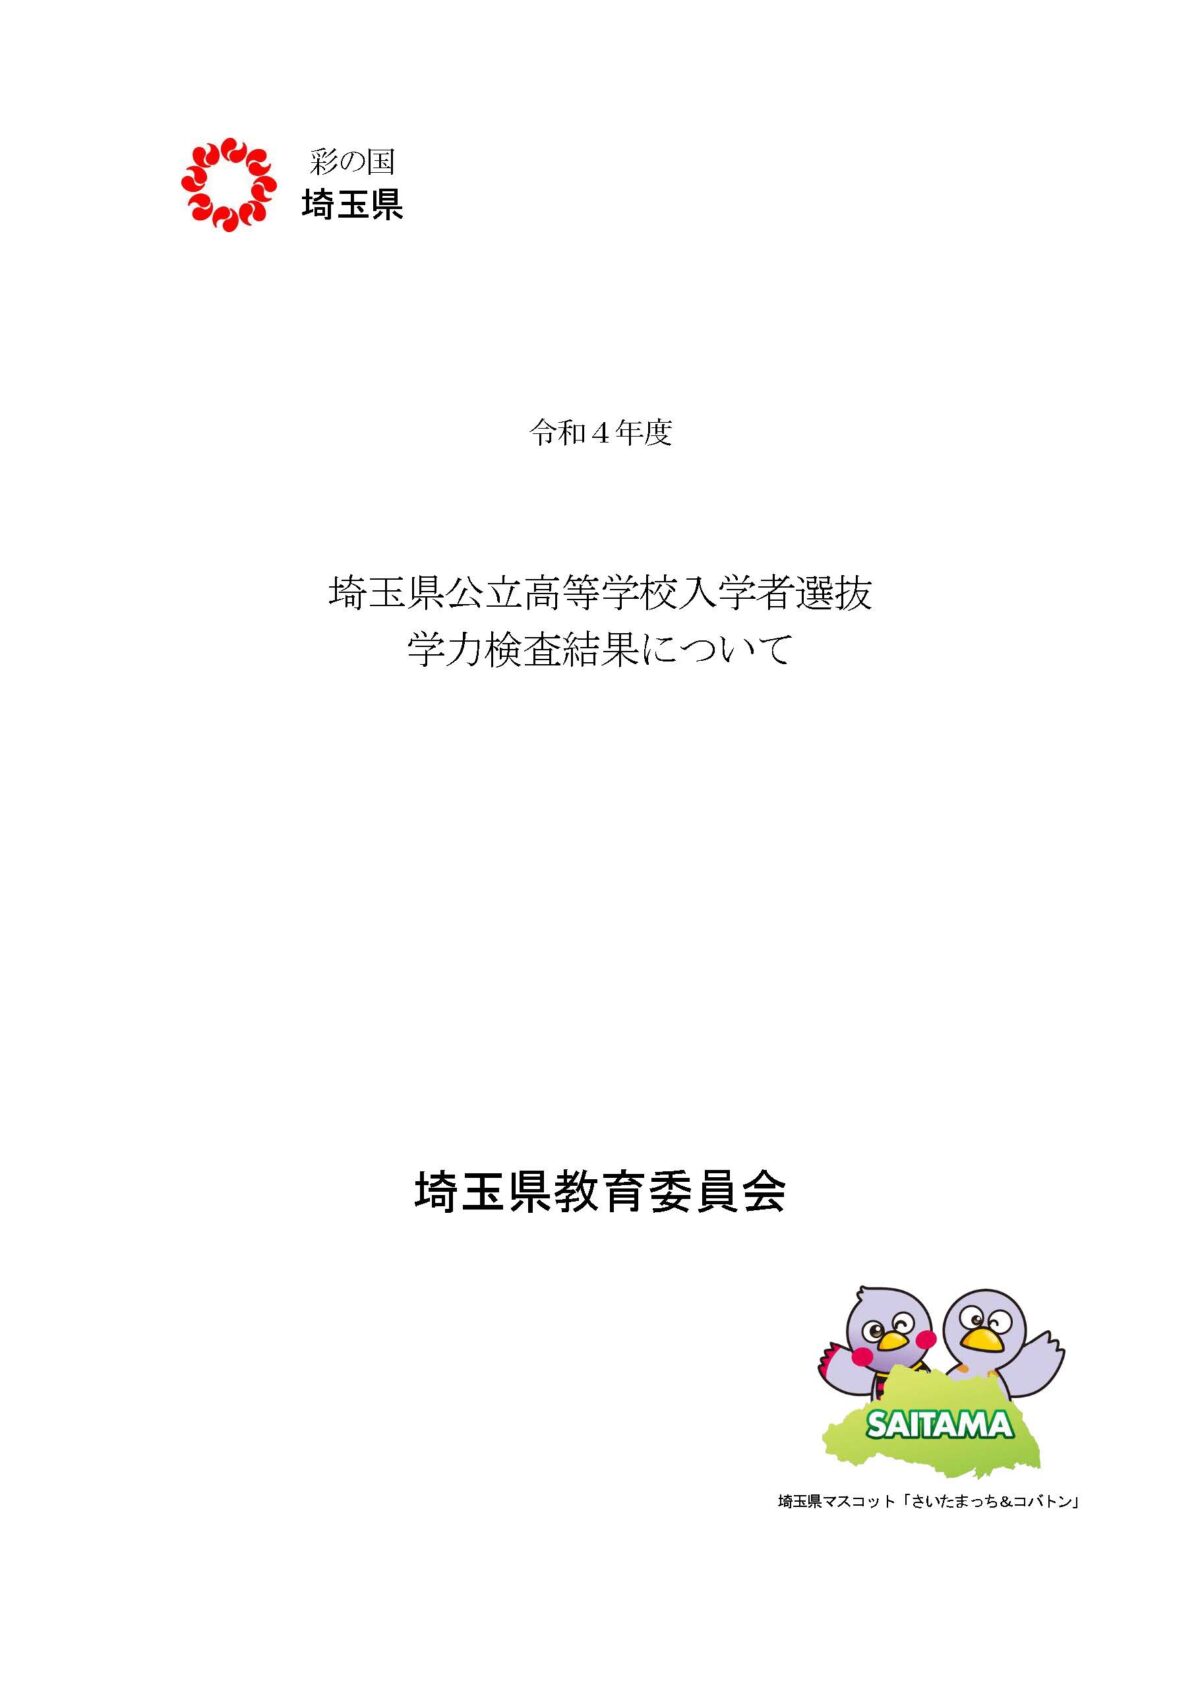 【埼玉県公立高校入試】前年度（令和４年度）問題解説を発表